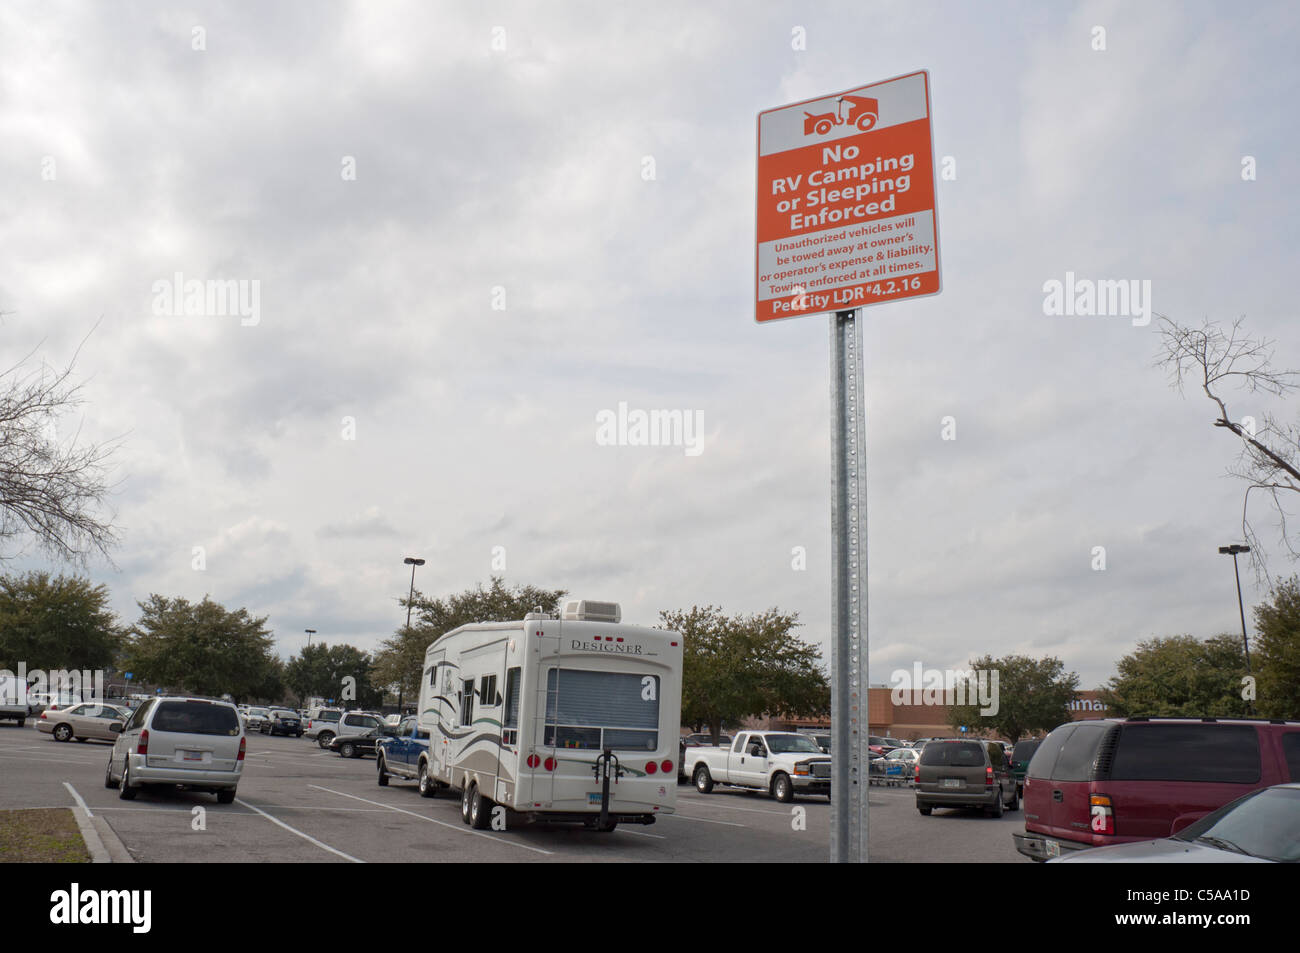 Melden Sie verbieten RV camping in Wal-Mart-Parkplatz Stockfoto